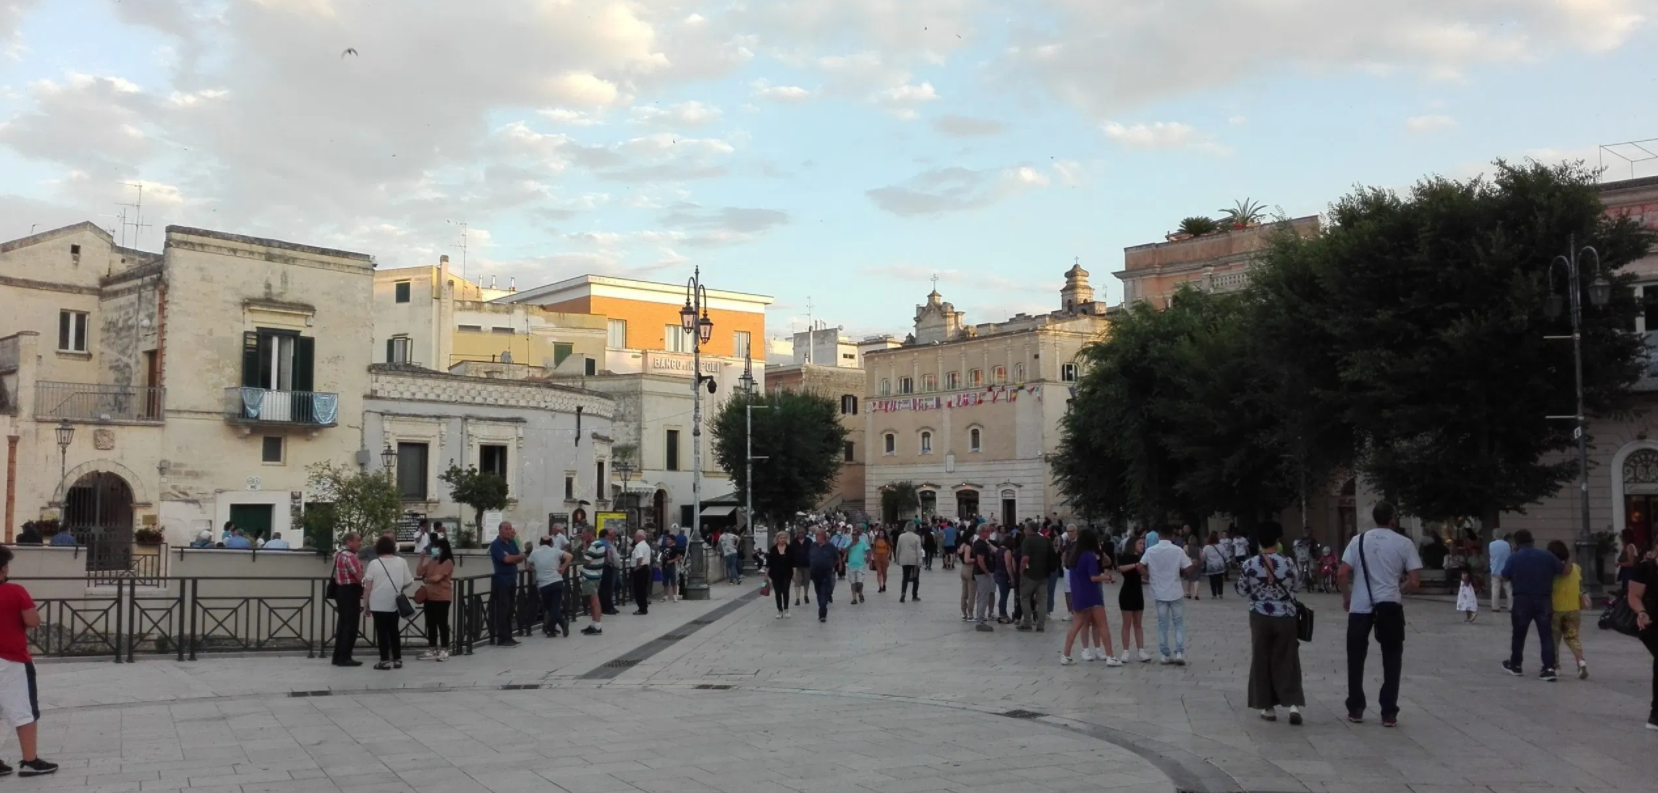 Covid-19 in Basilicata, preoccupano i contagi a Matera: ieri altri 42